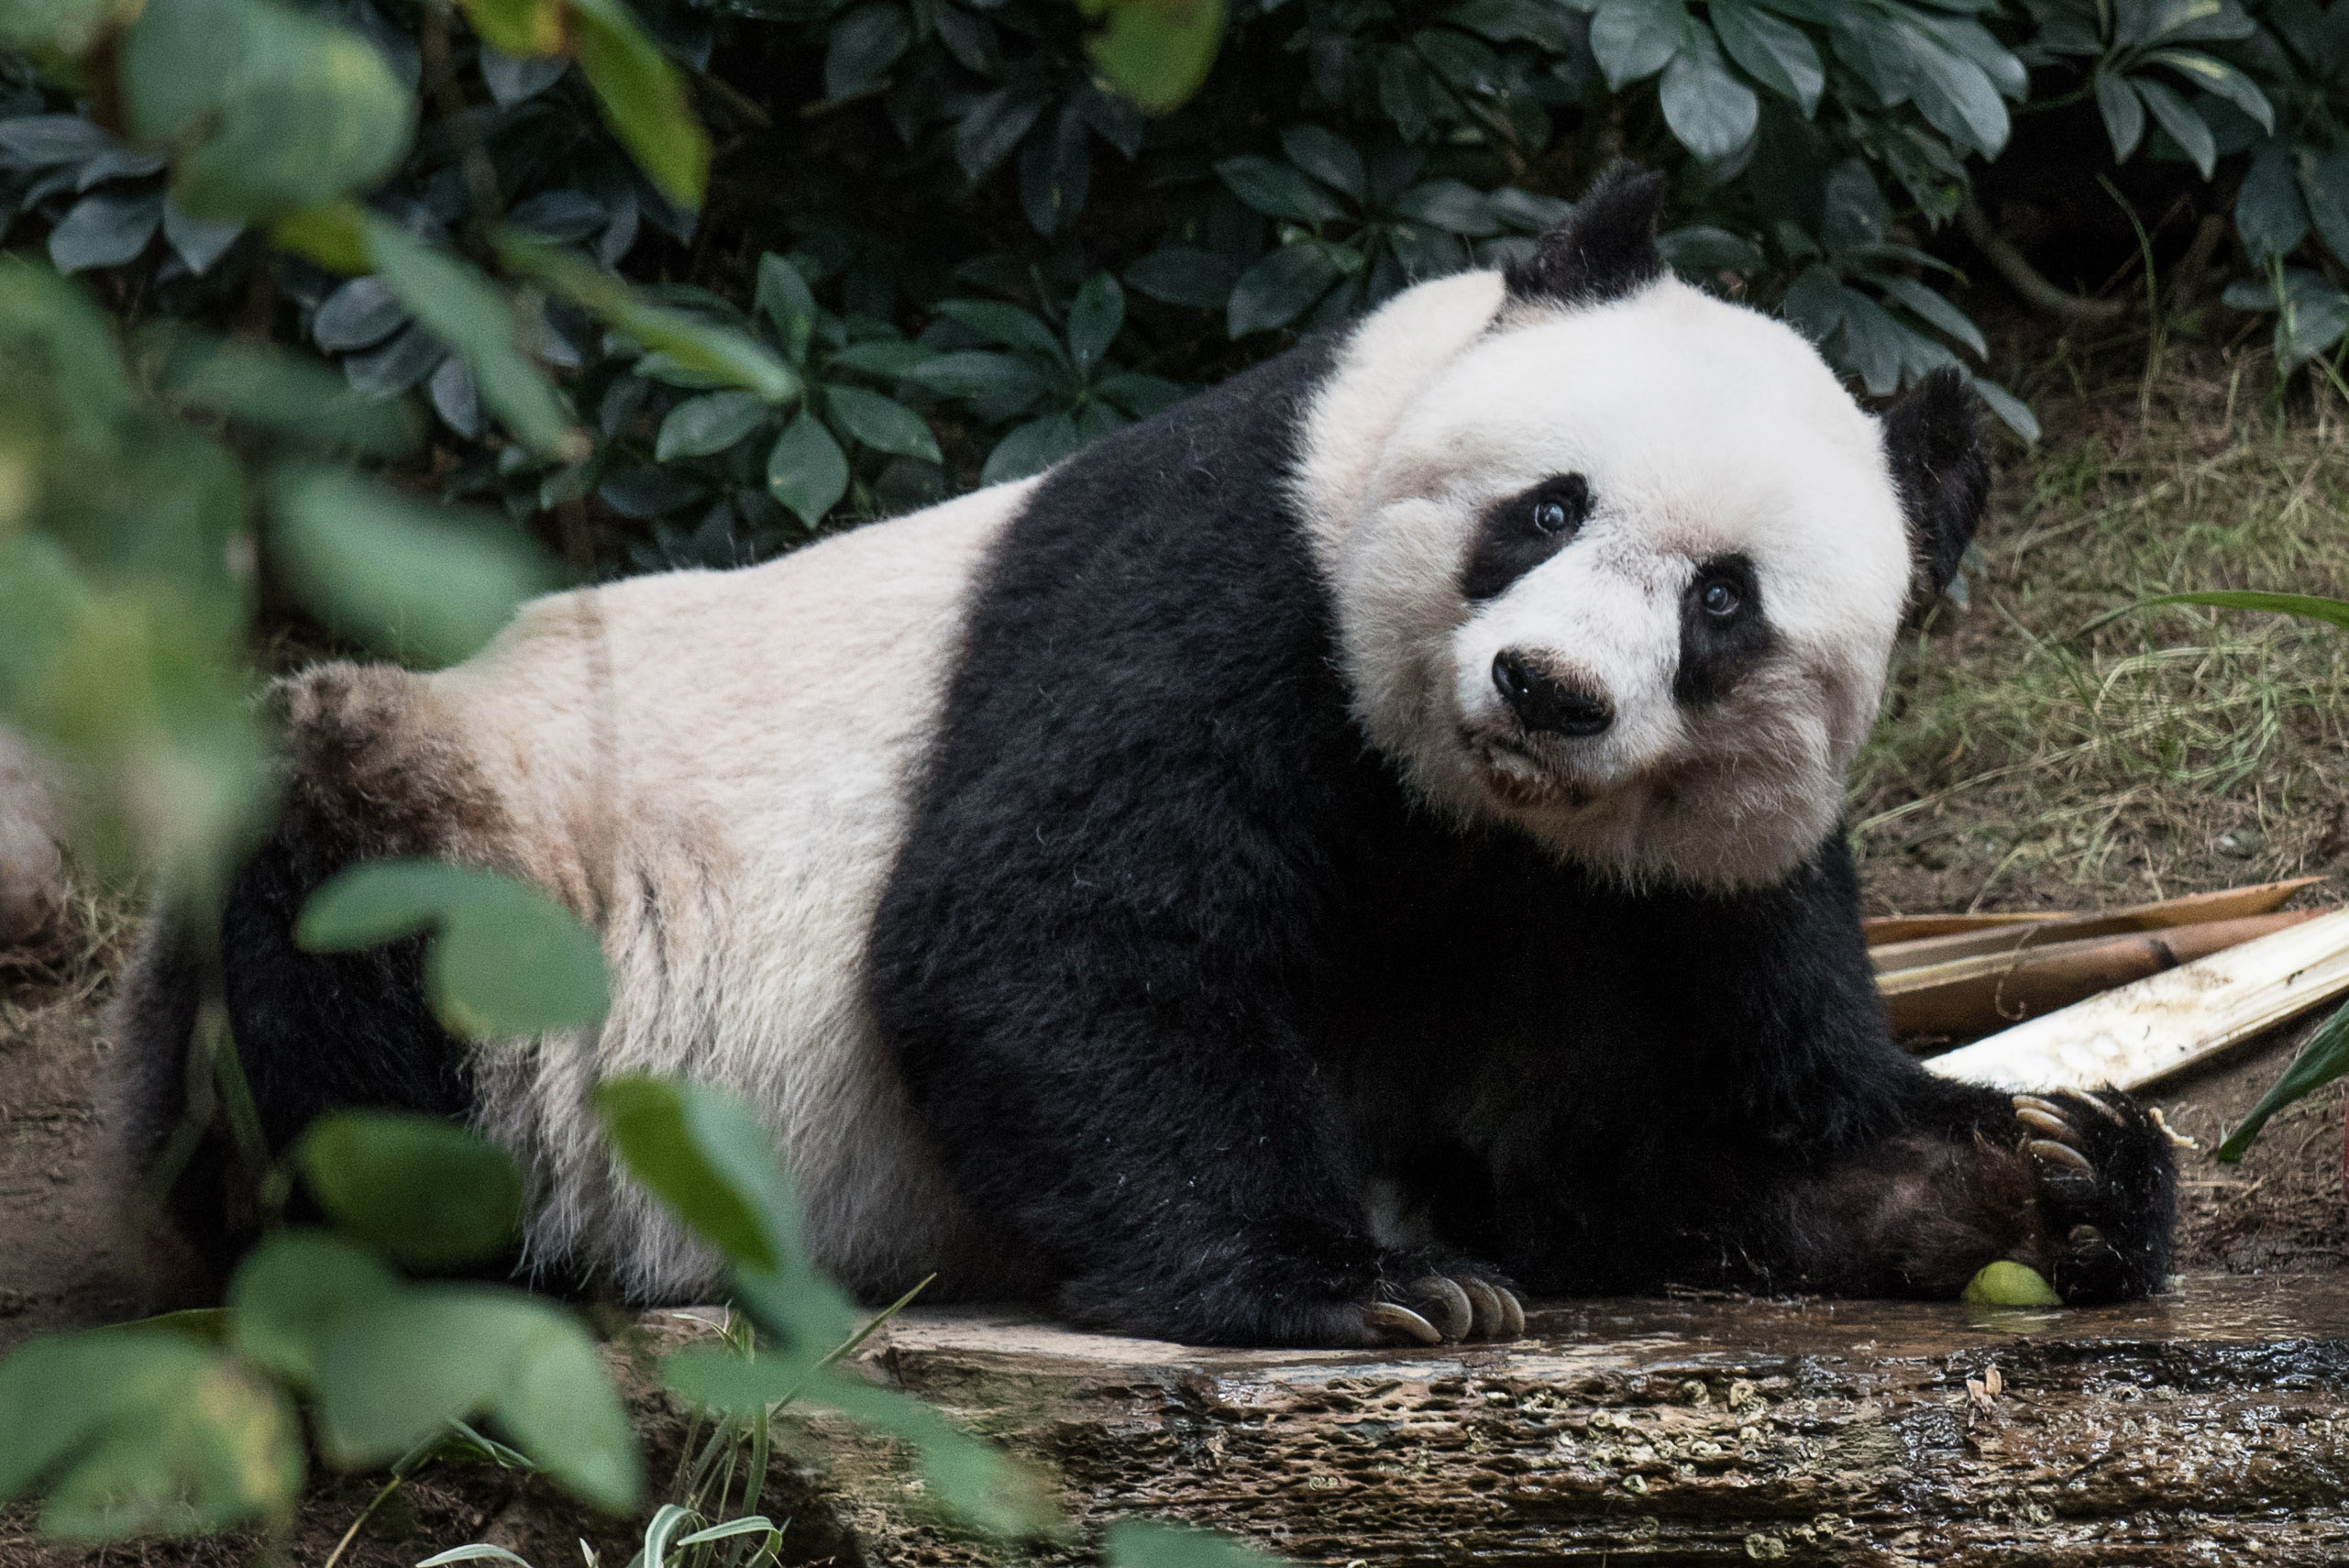 A pandák mekegve jelzik, ha párosodnának